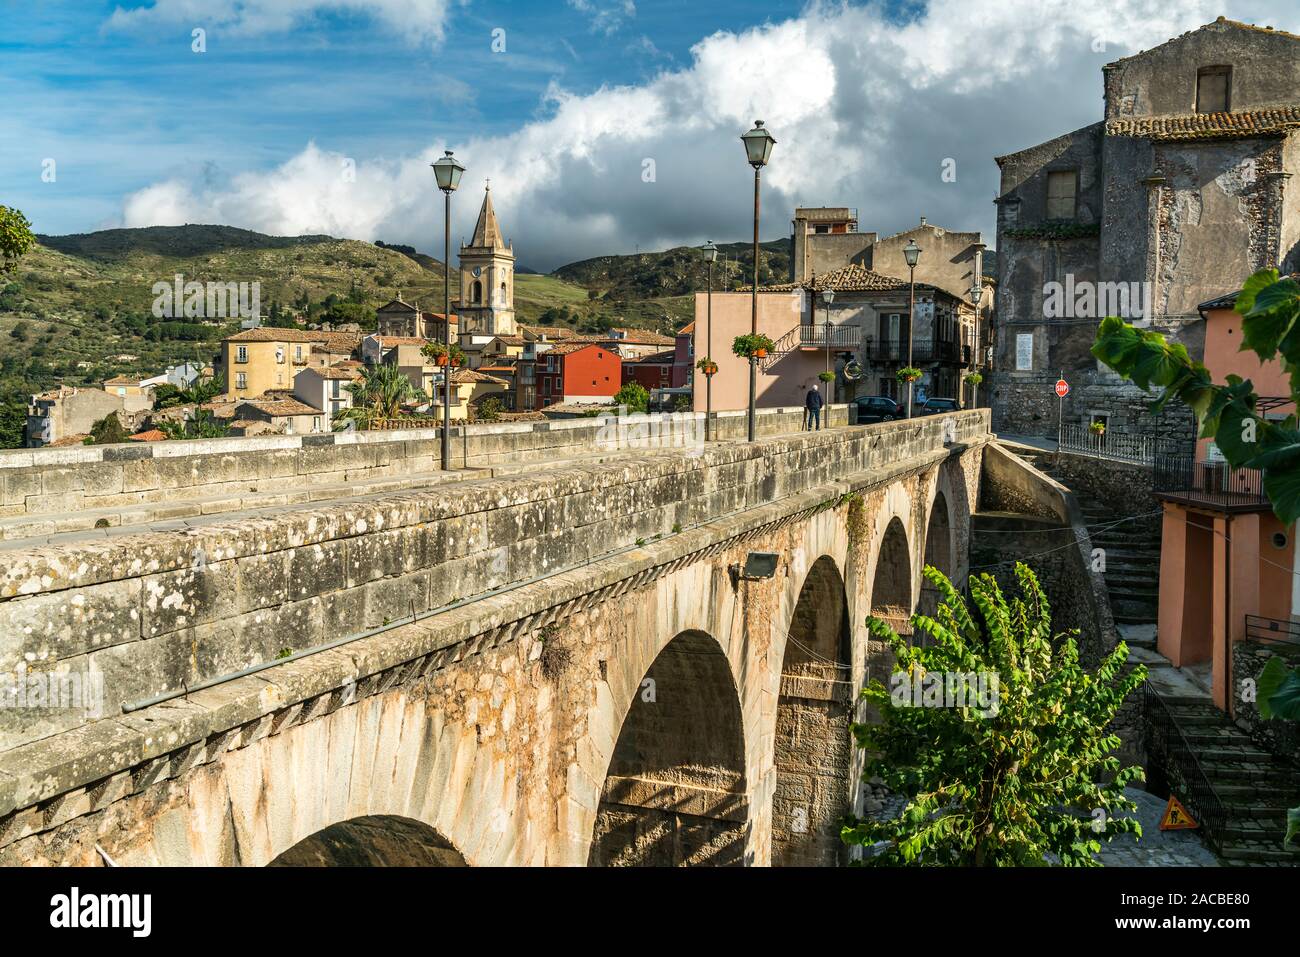 Steinerne Brücke im Dorf Novara di Sicilia, Sizilien, Italien, Europa | puente de piedra en Novara di Sicilia village, Sicilia, Italia, Europa Foto de stock